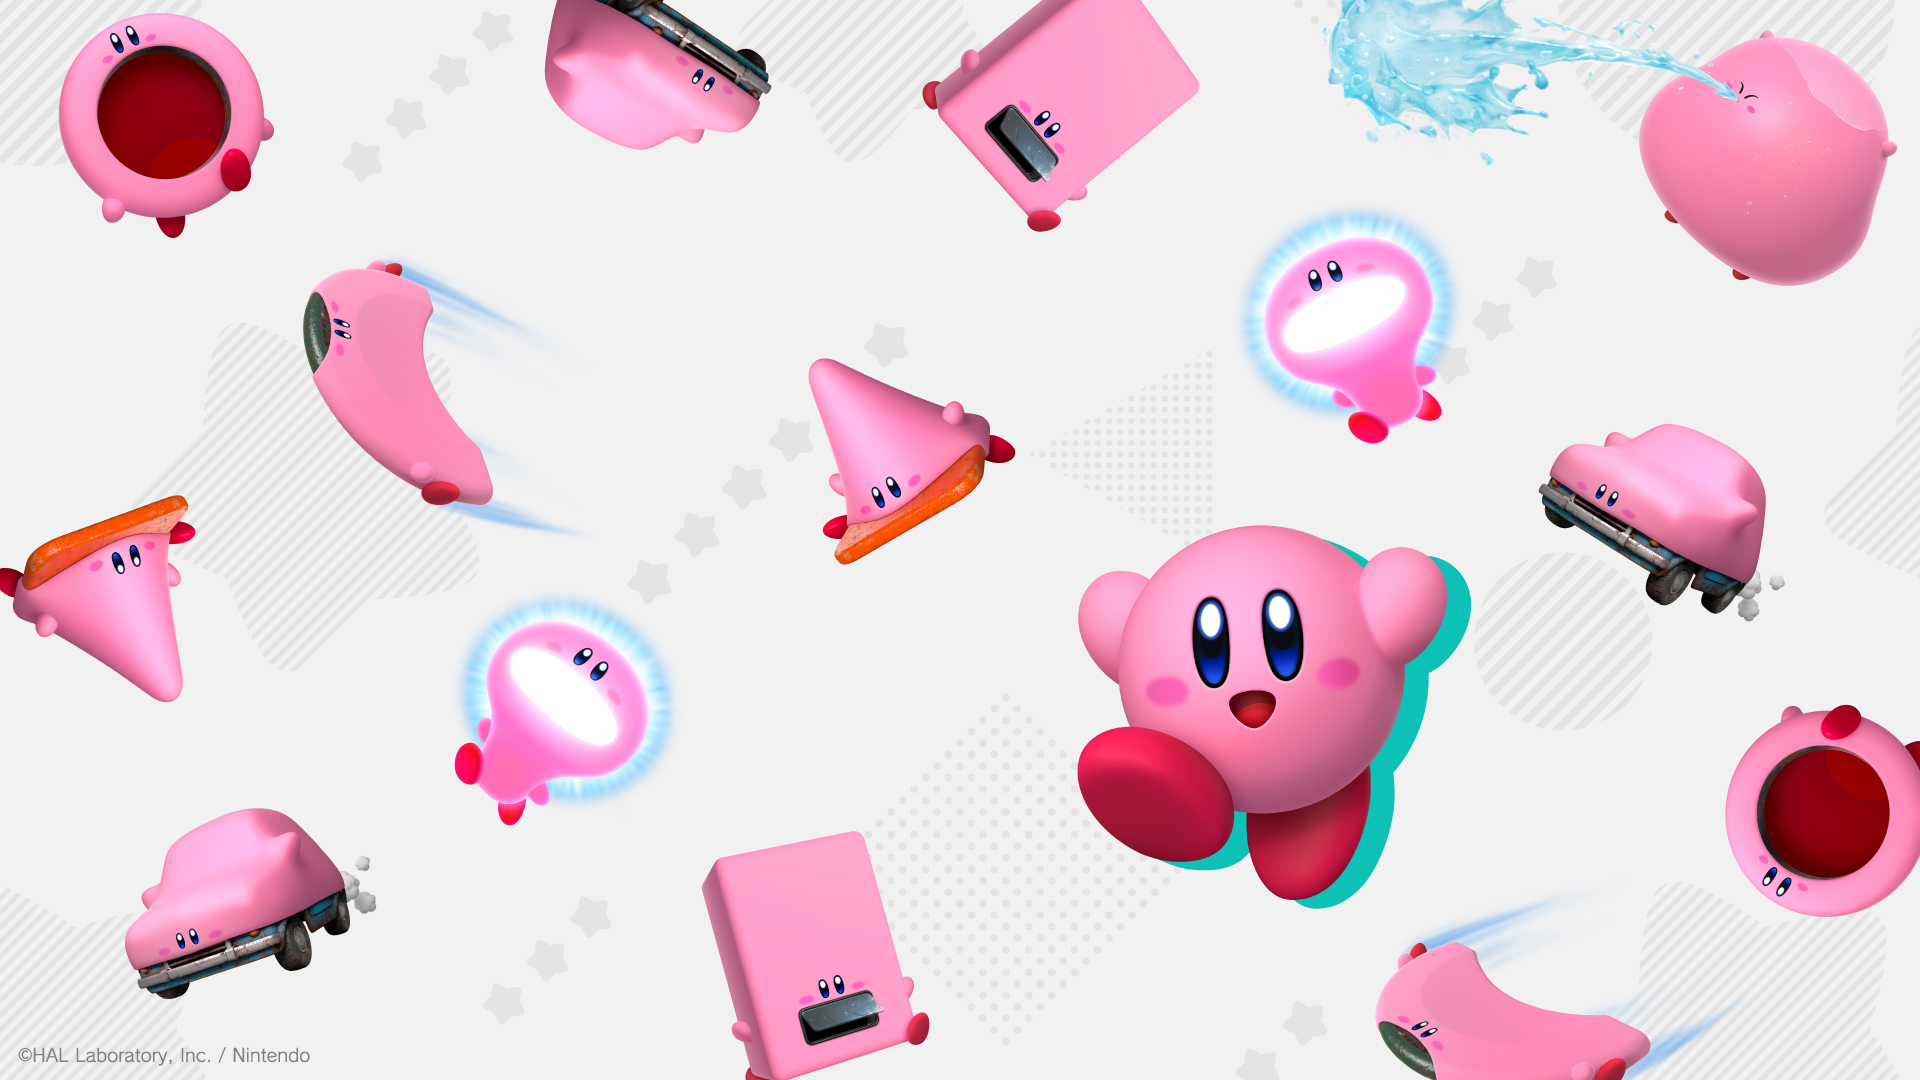 Chỉ cần nhìn vào những hình nền HD về game Kirby and the Forgotten Land, bạn sẽ cảm thấy như được đưa vào thế giới đầy màu sắc, đầy thú vị do Kirby mang lại. Chúng tôi cung cấp những hình nền tuyệt đẹp này để bạn không bỏ lỡ bất cứ điều gì khi đang chờ đợi tựa game mới này.